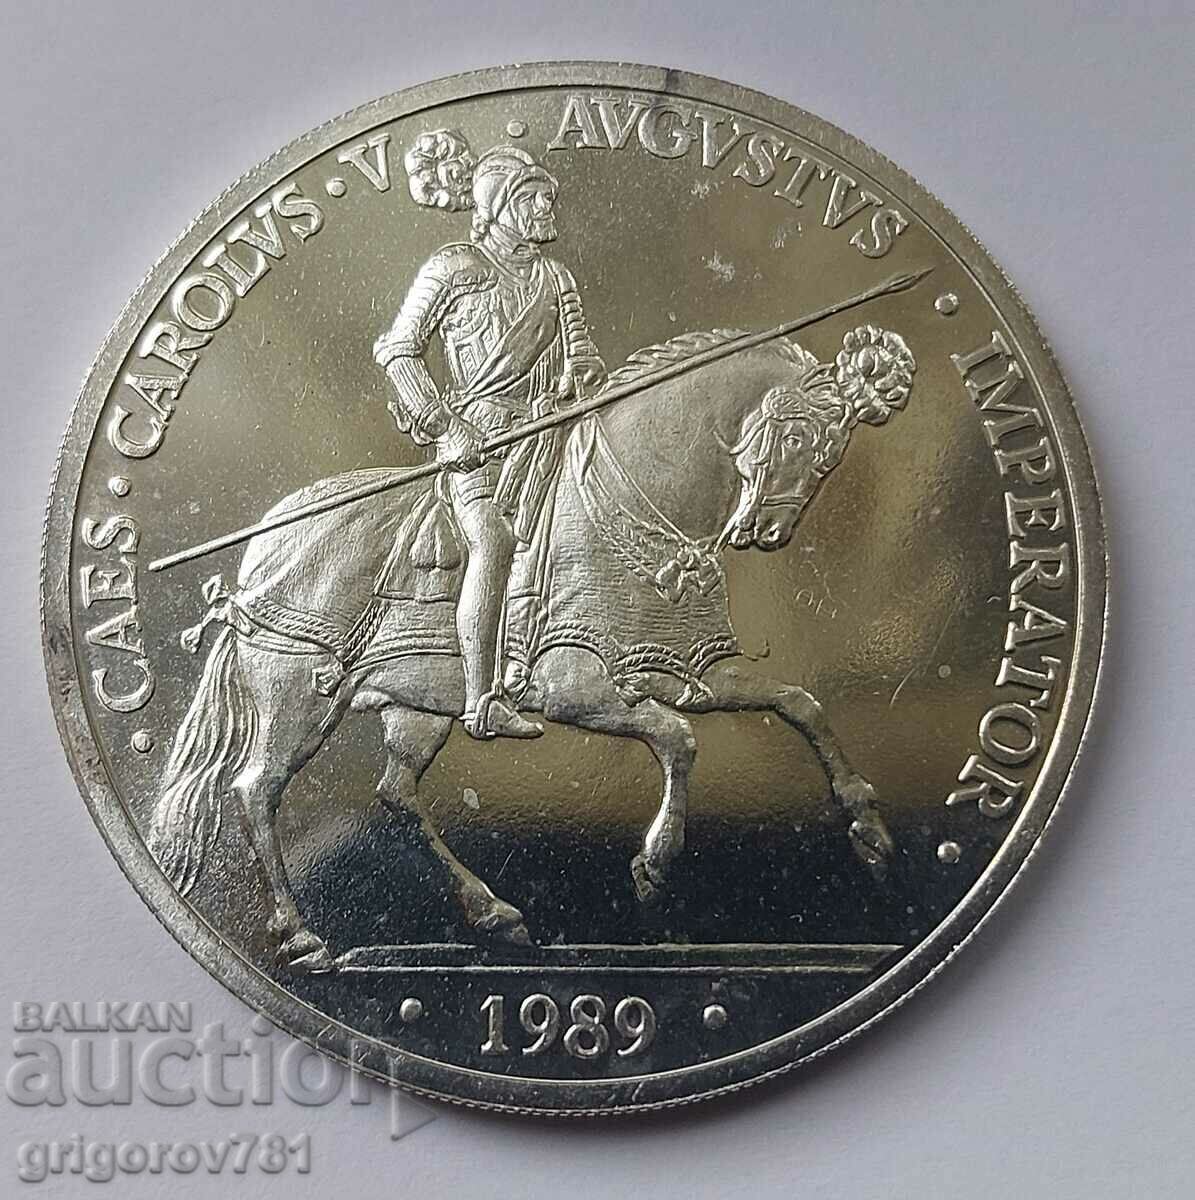 5 ECU Silver Spain 1989 - Silver Coin #3